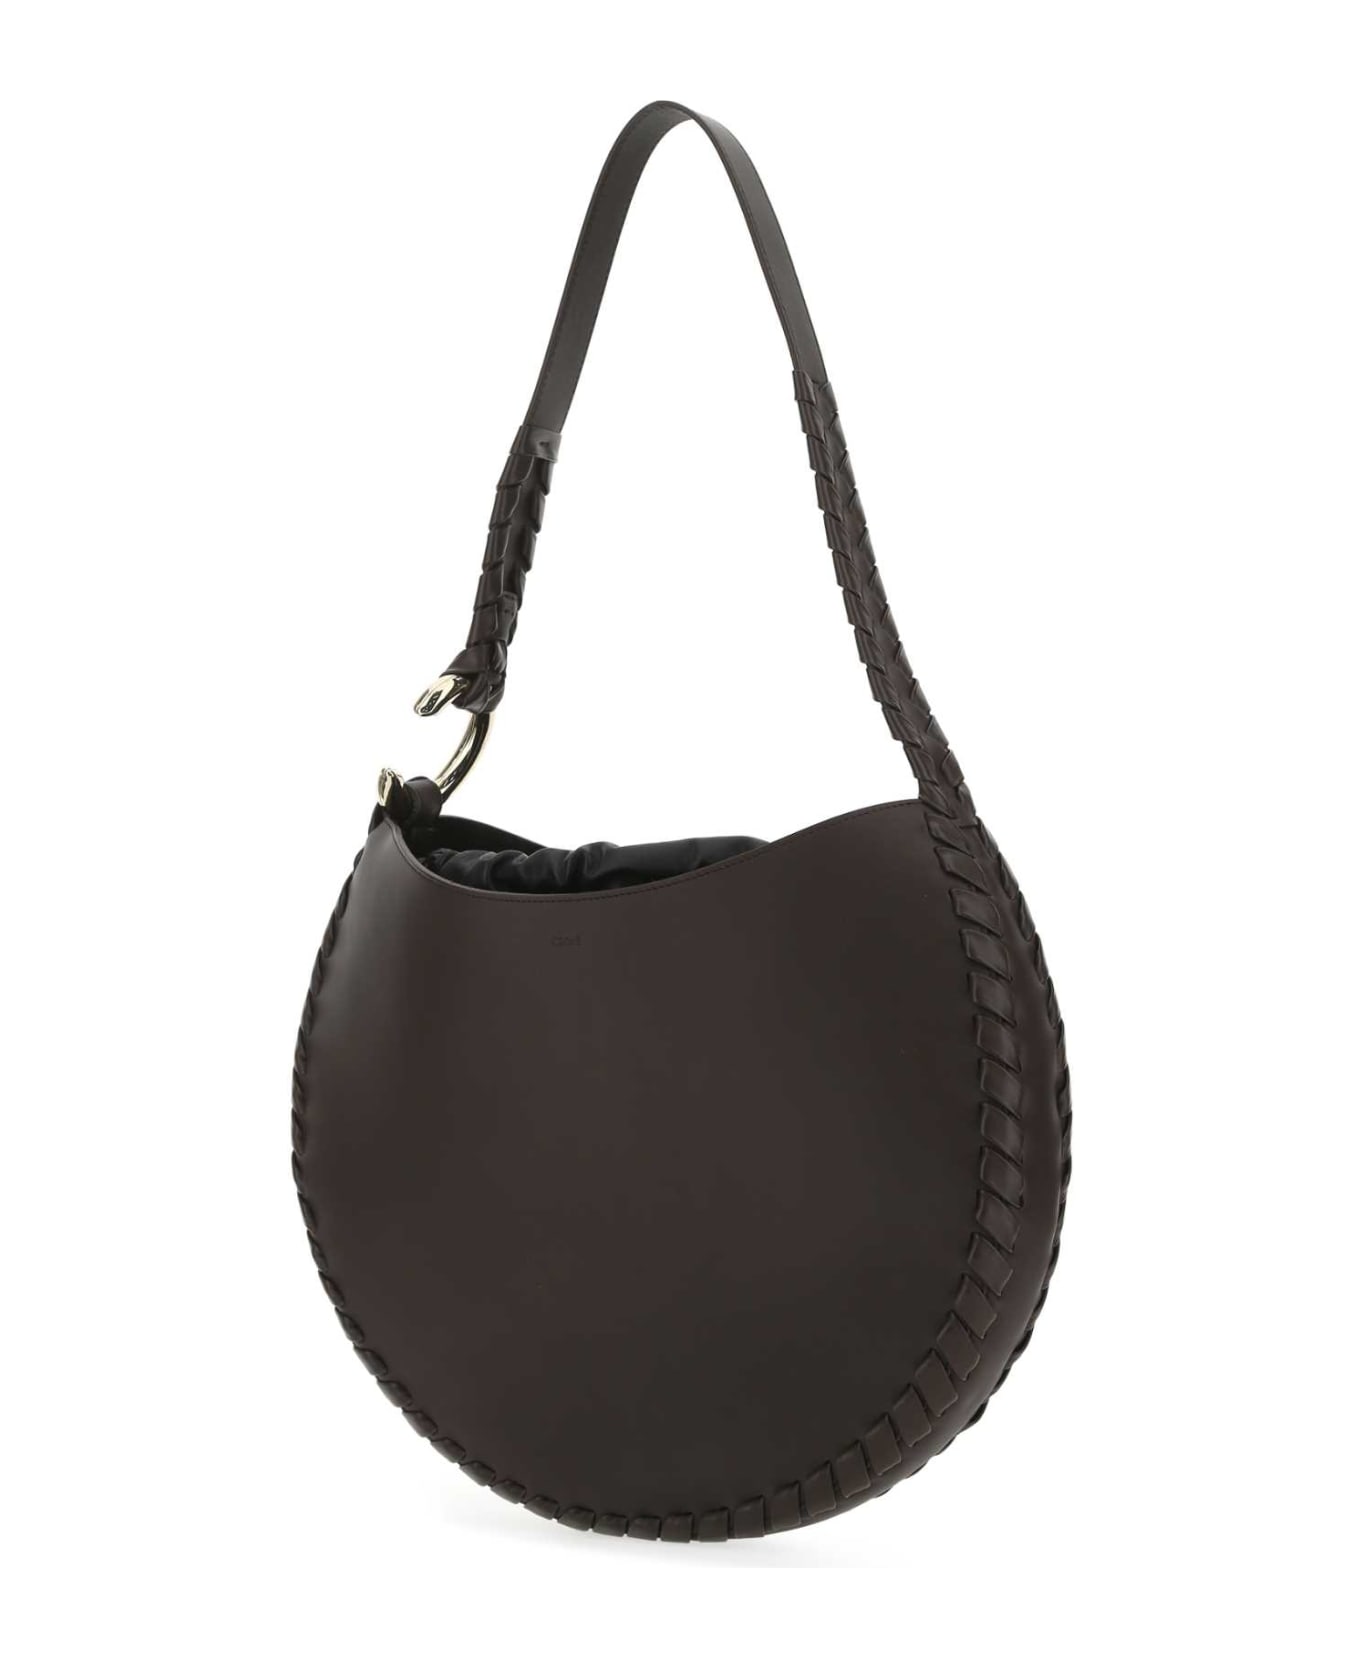 Chloé Dark Brown Leather Large Mate Shoulder Bag - 297